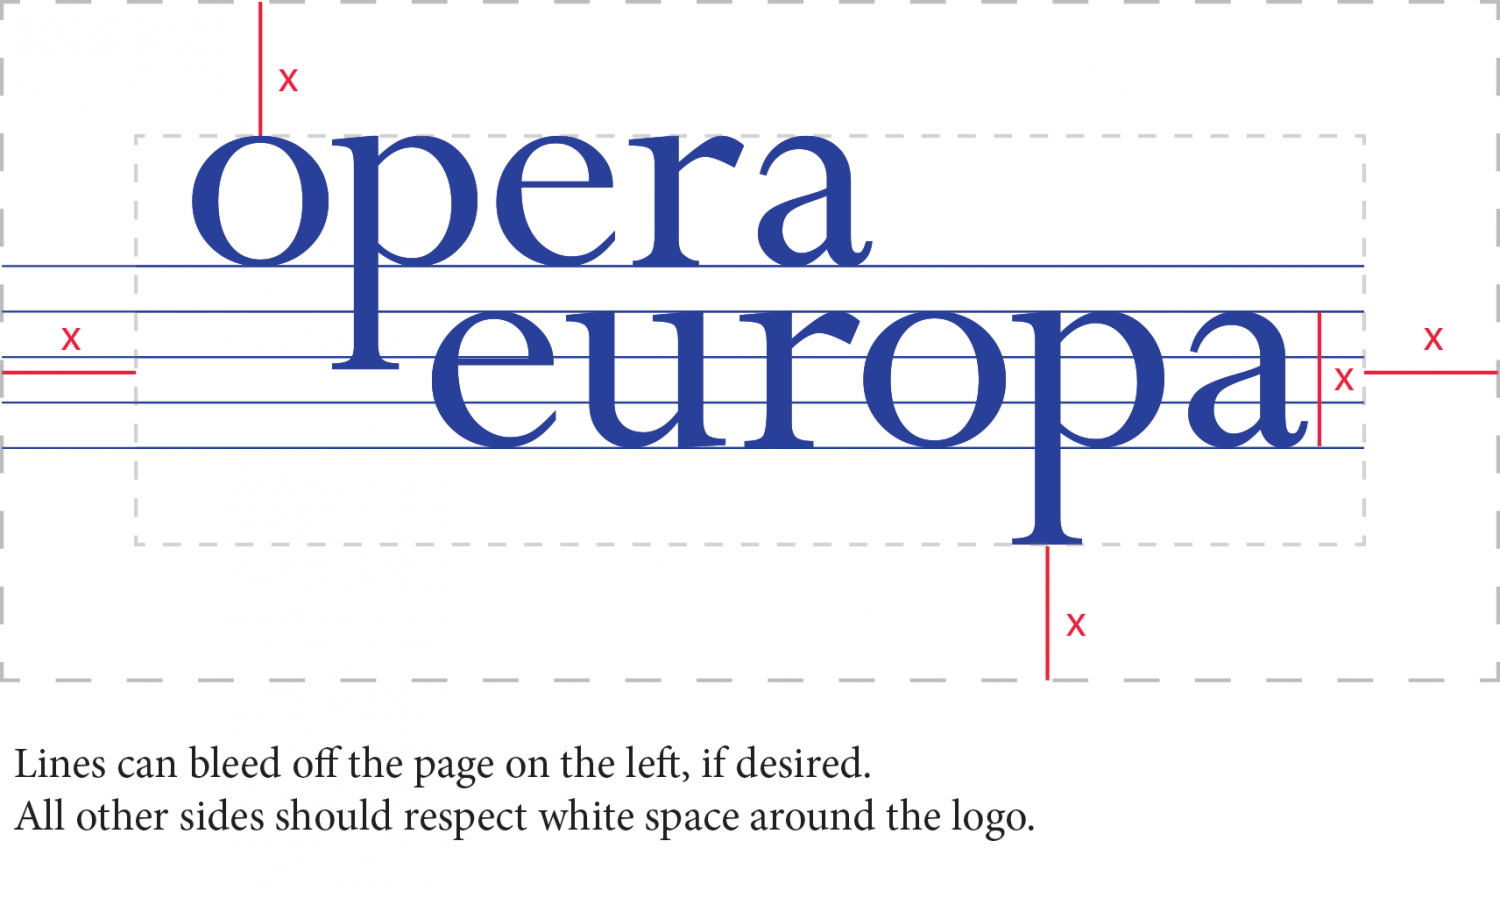 White with Blue Rectangles Logo - Opera Europa logos - Opera-Europa